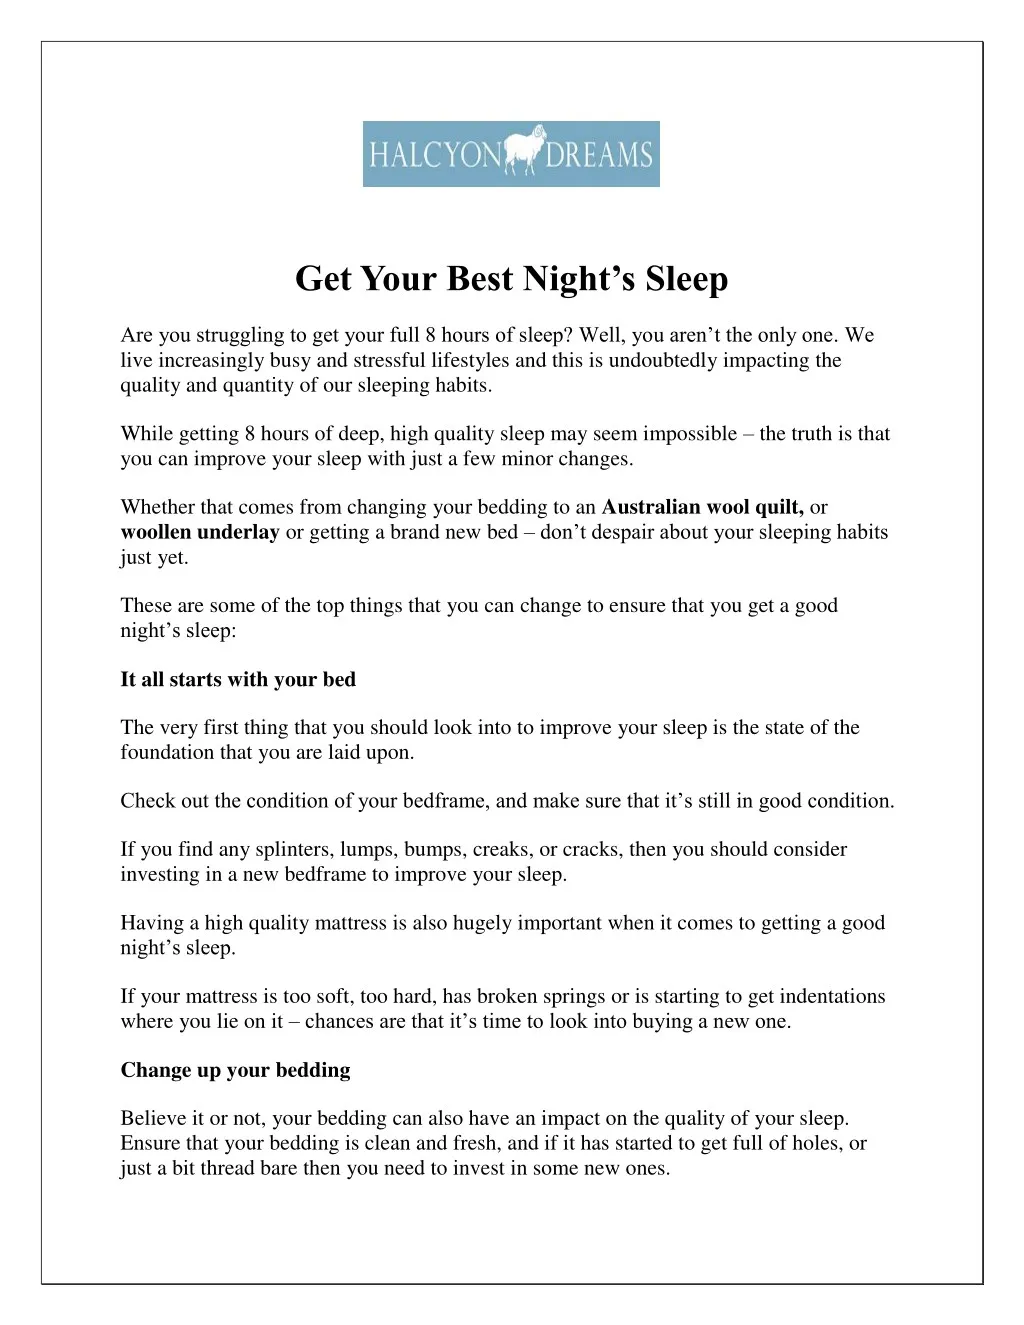 get your best night s sleep